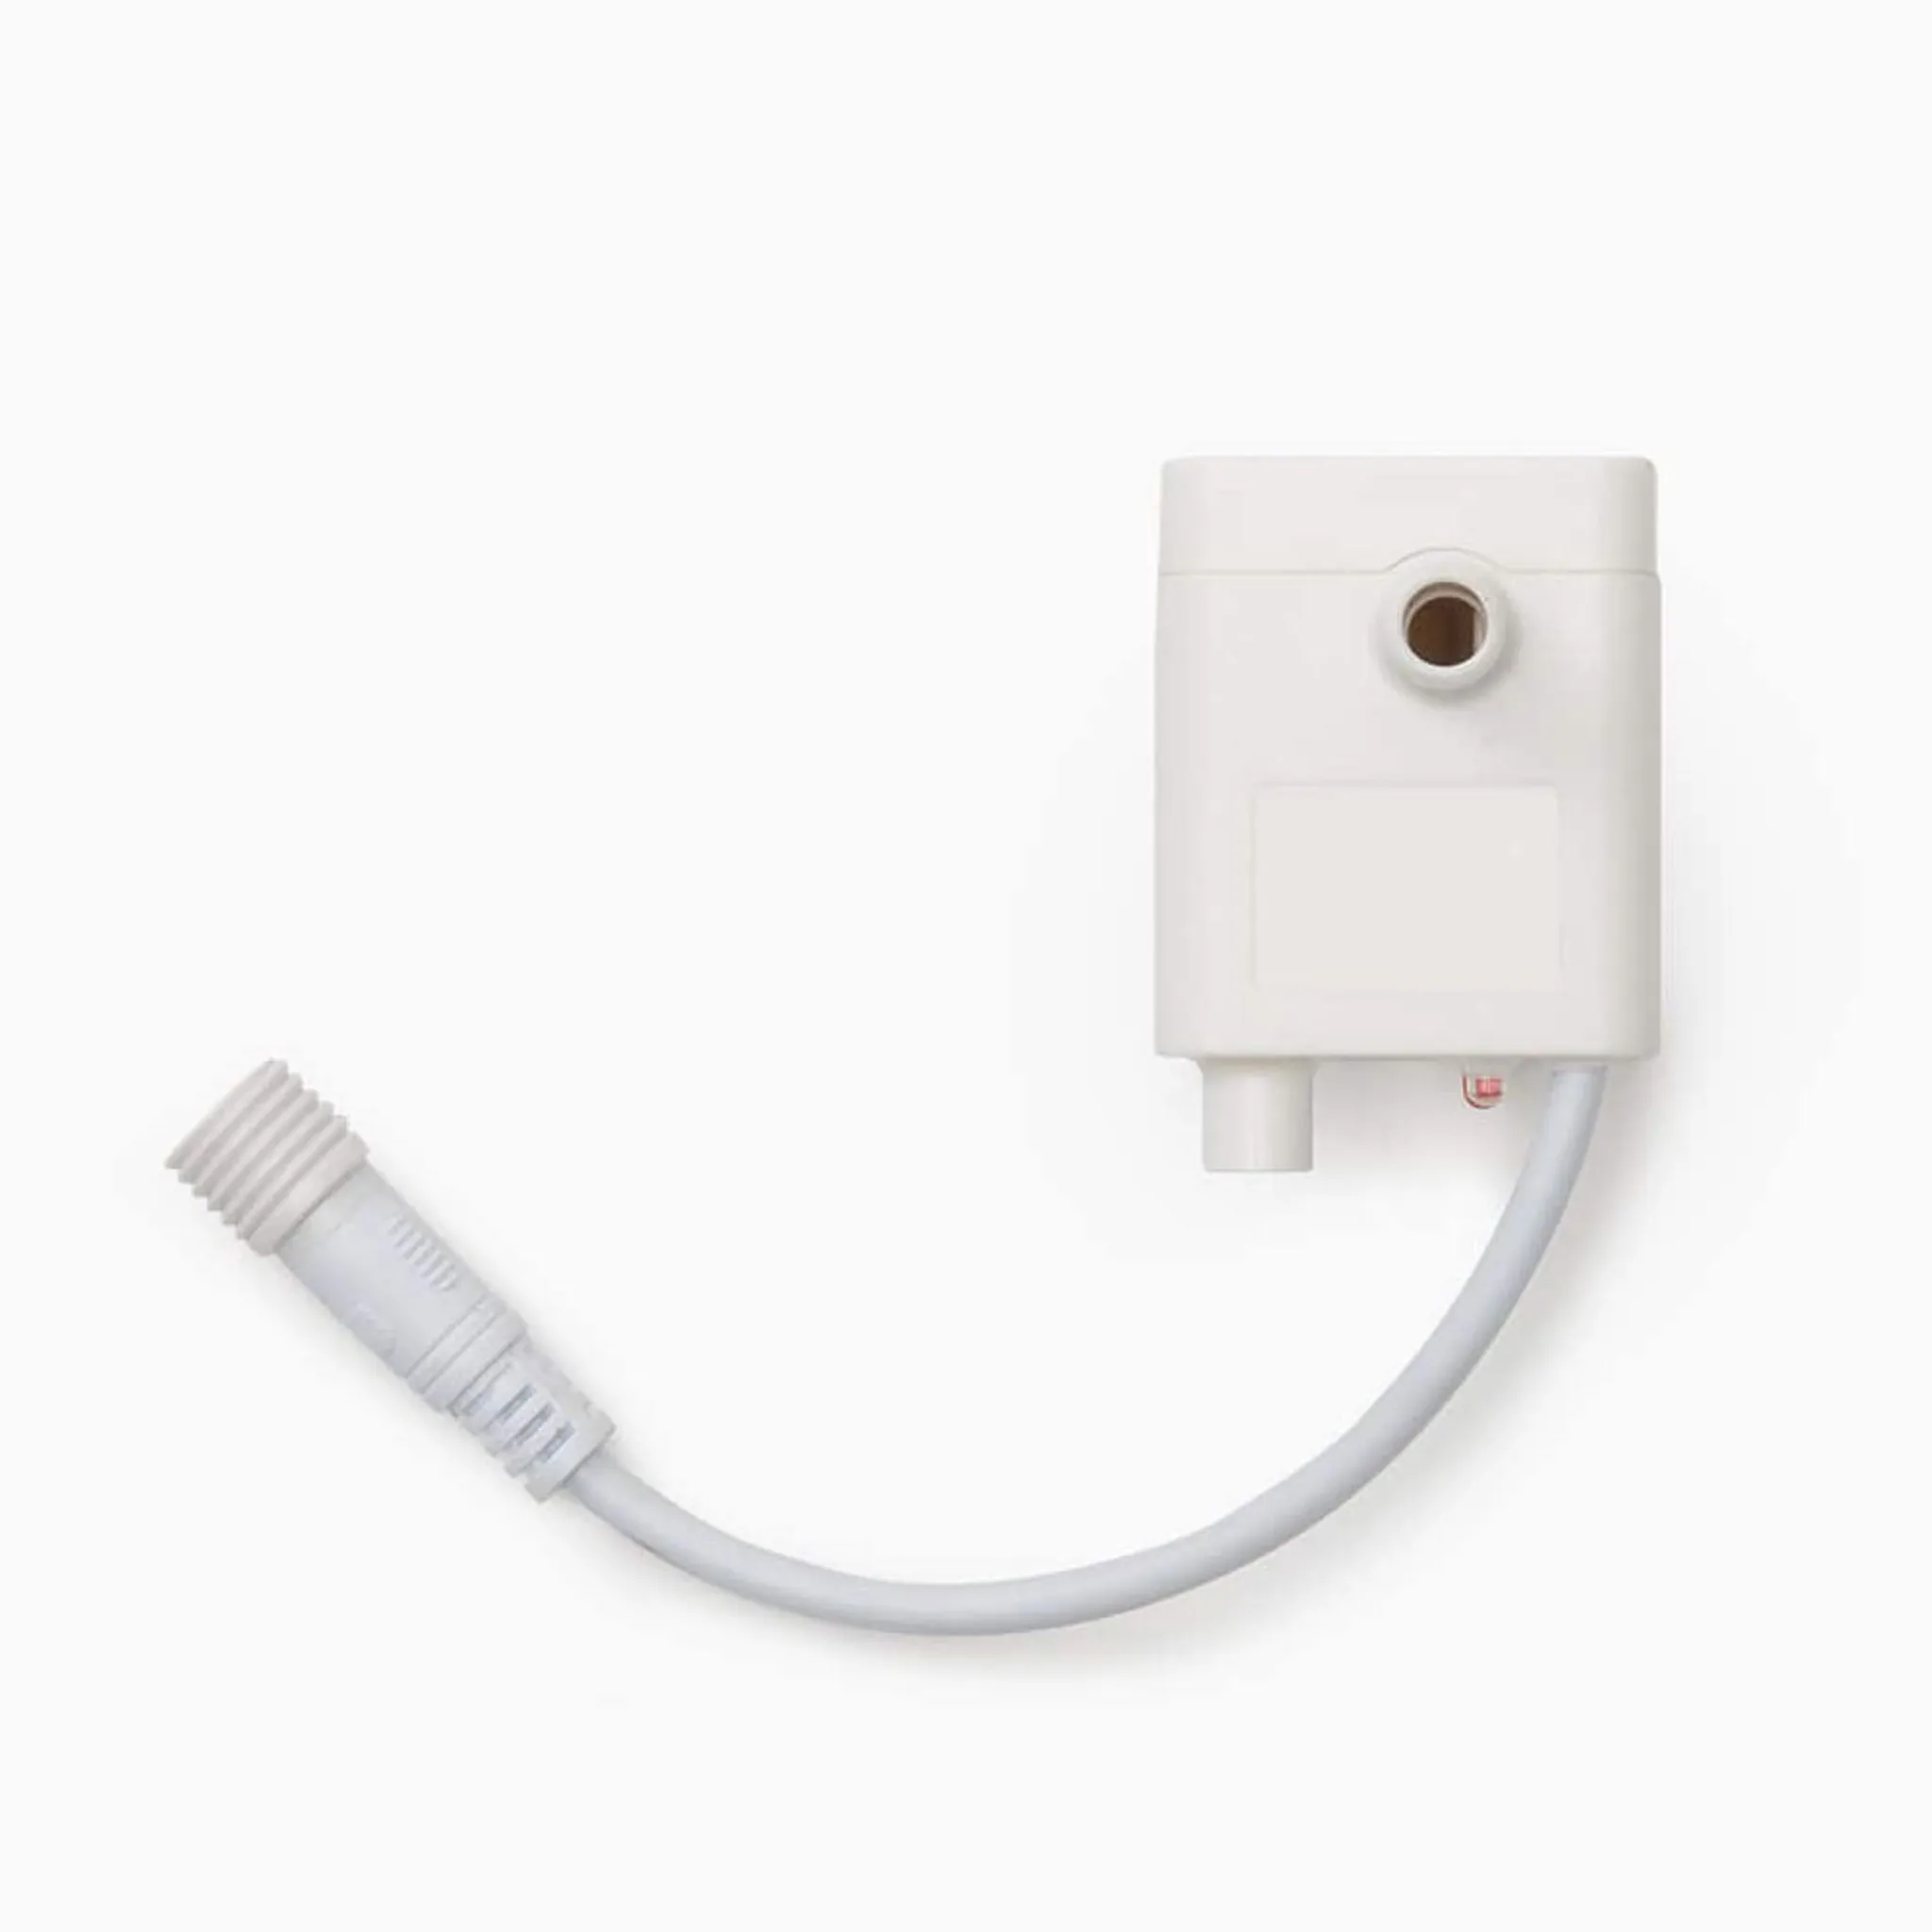 Ersatz-USB-Pumpe für diverse CATIT/DOGIT